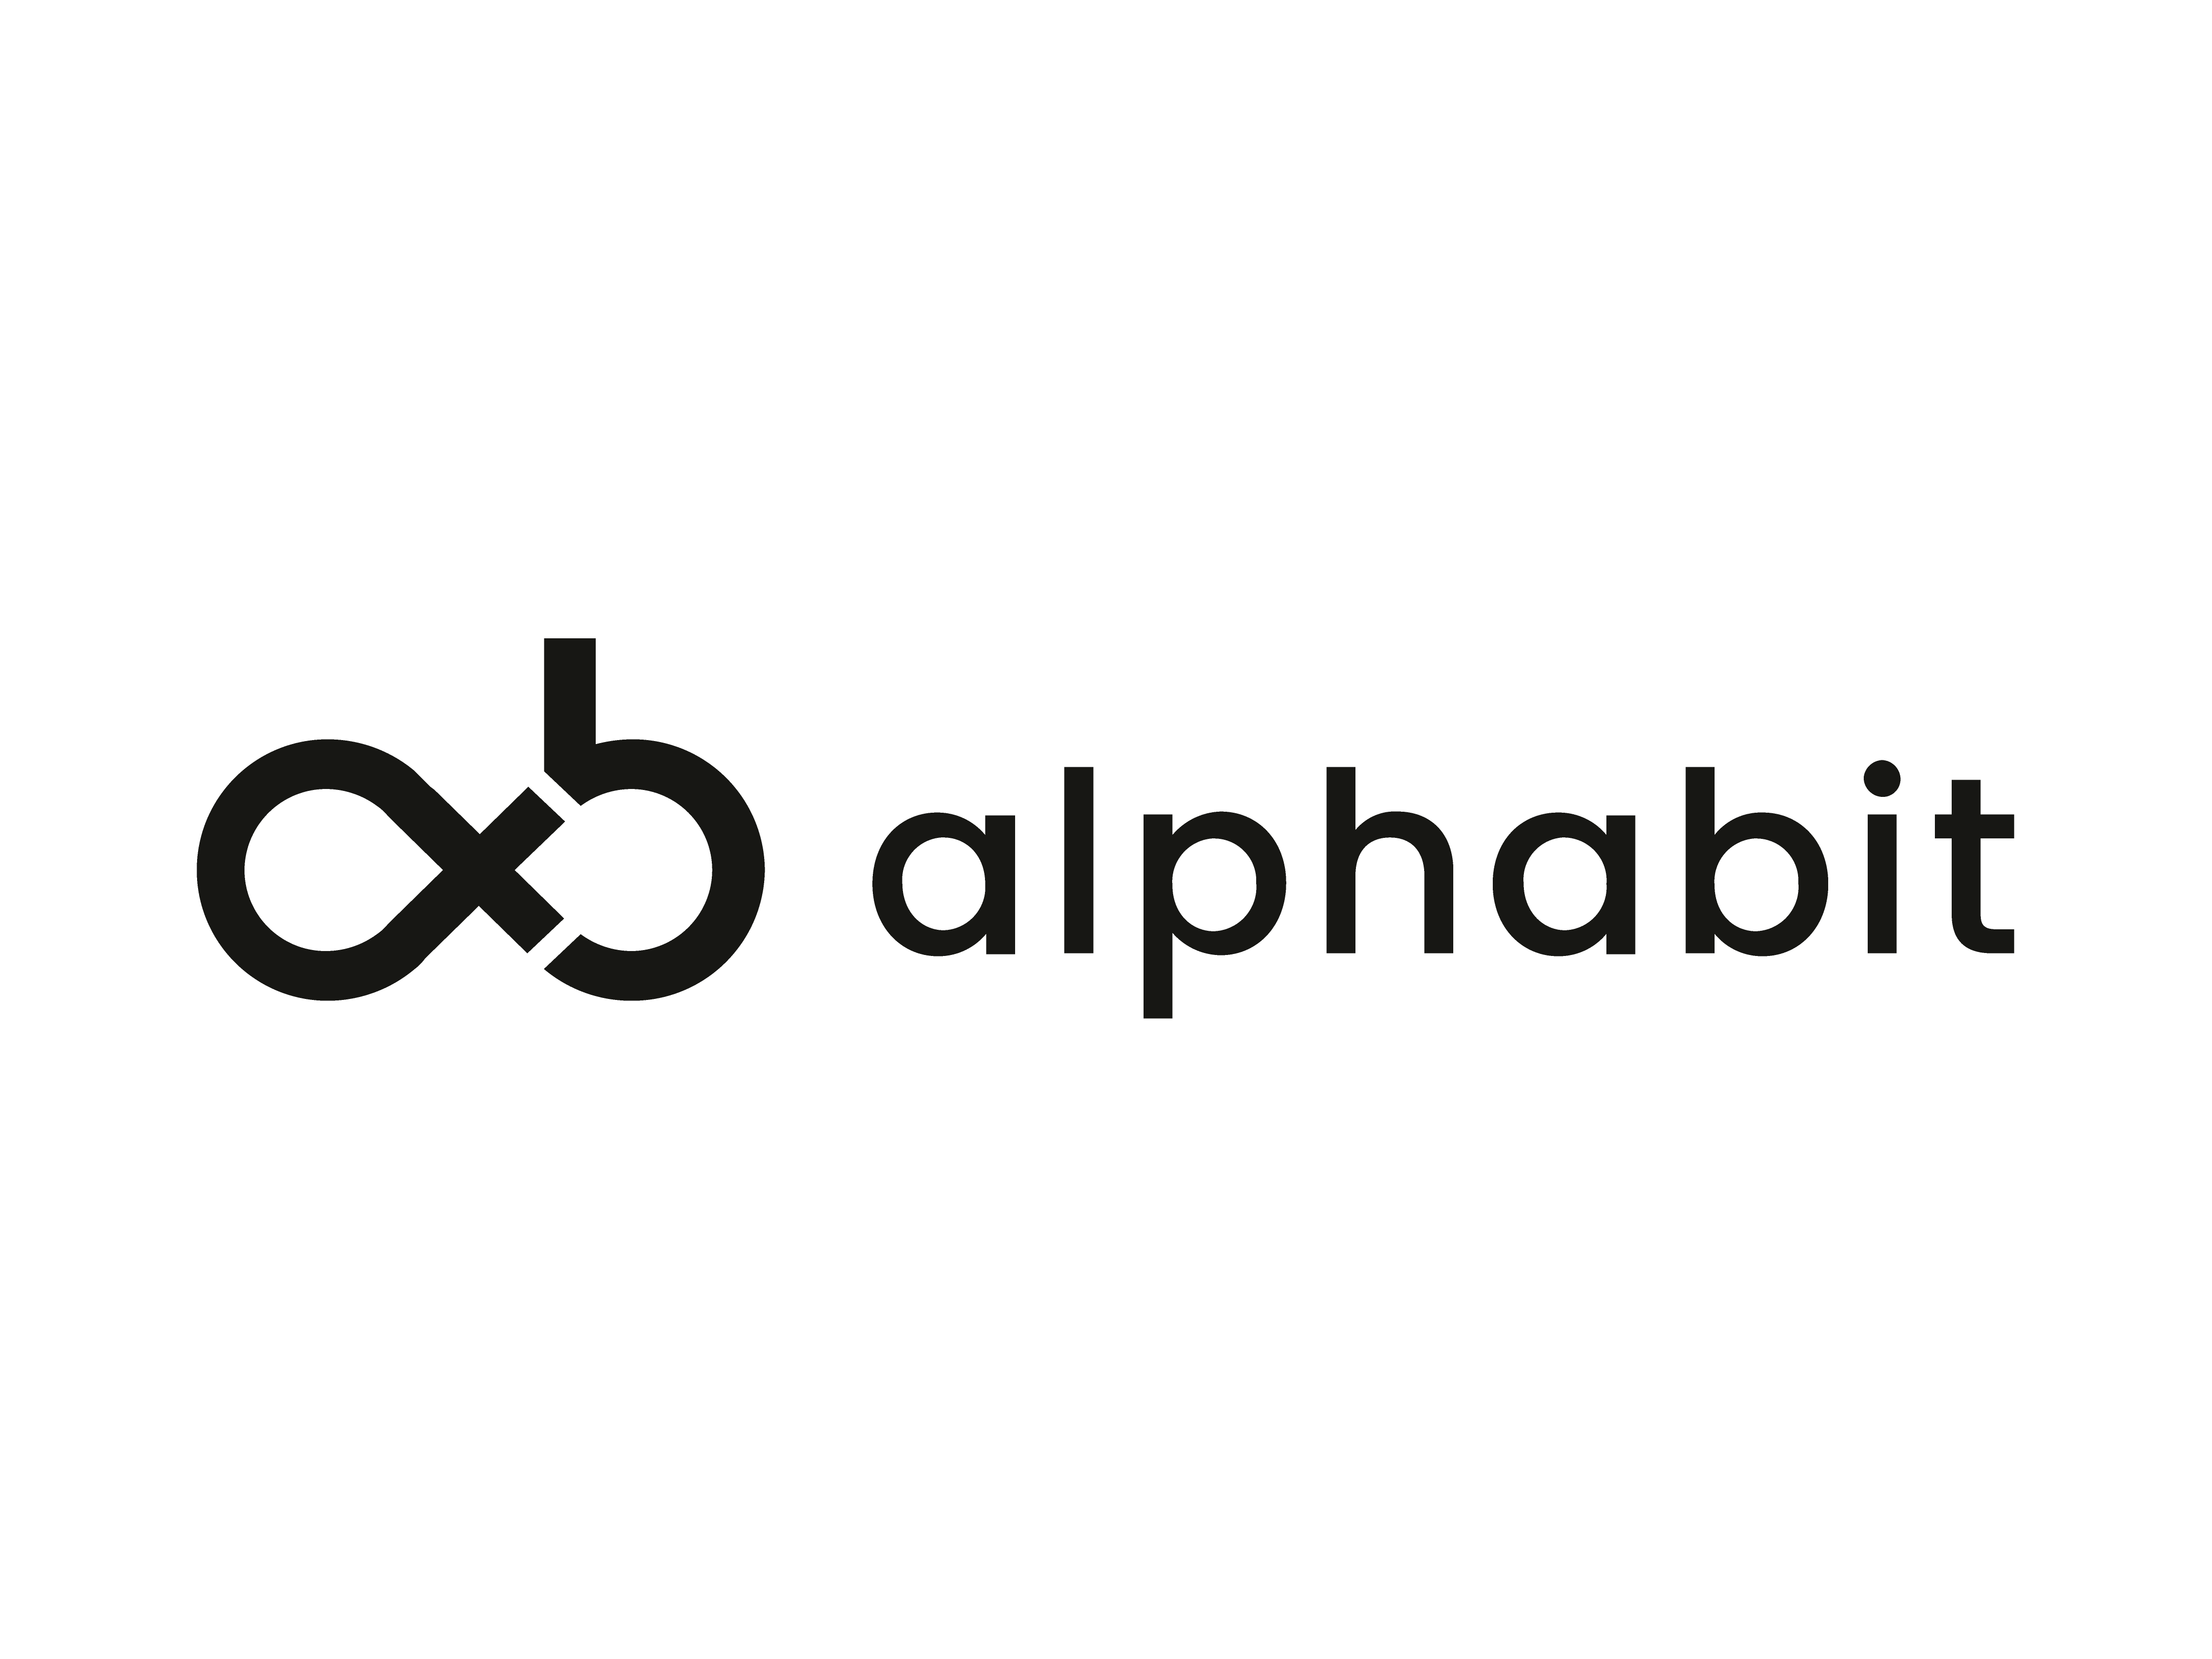 alphabit cryptocurrency